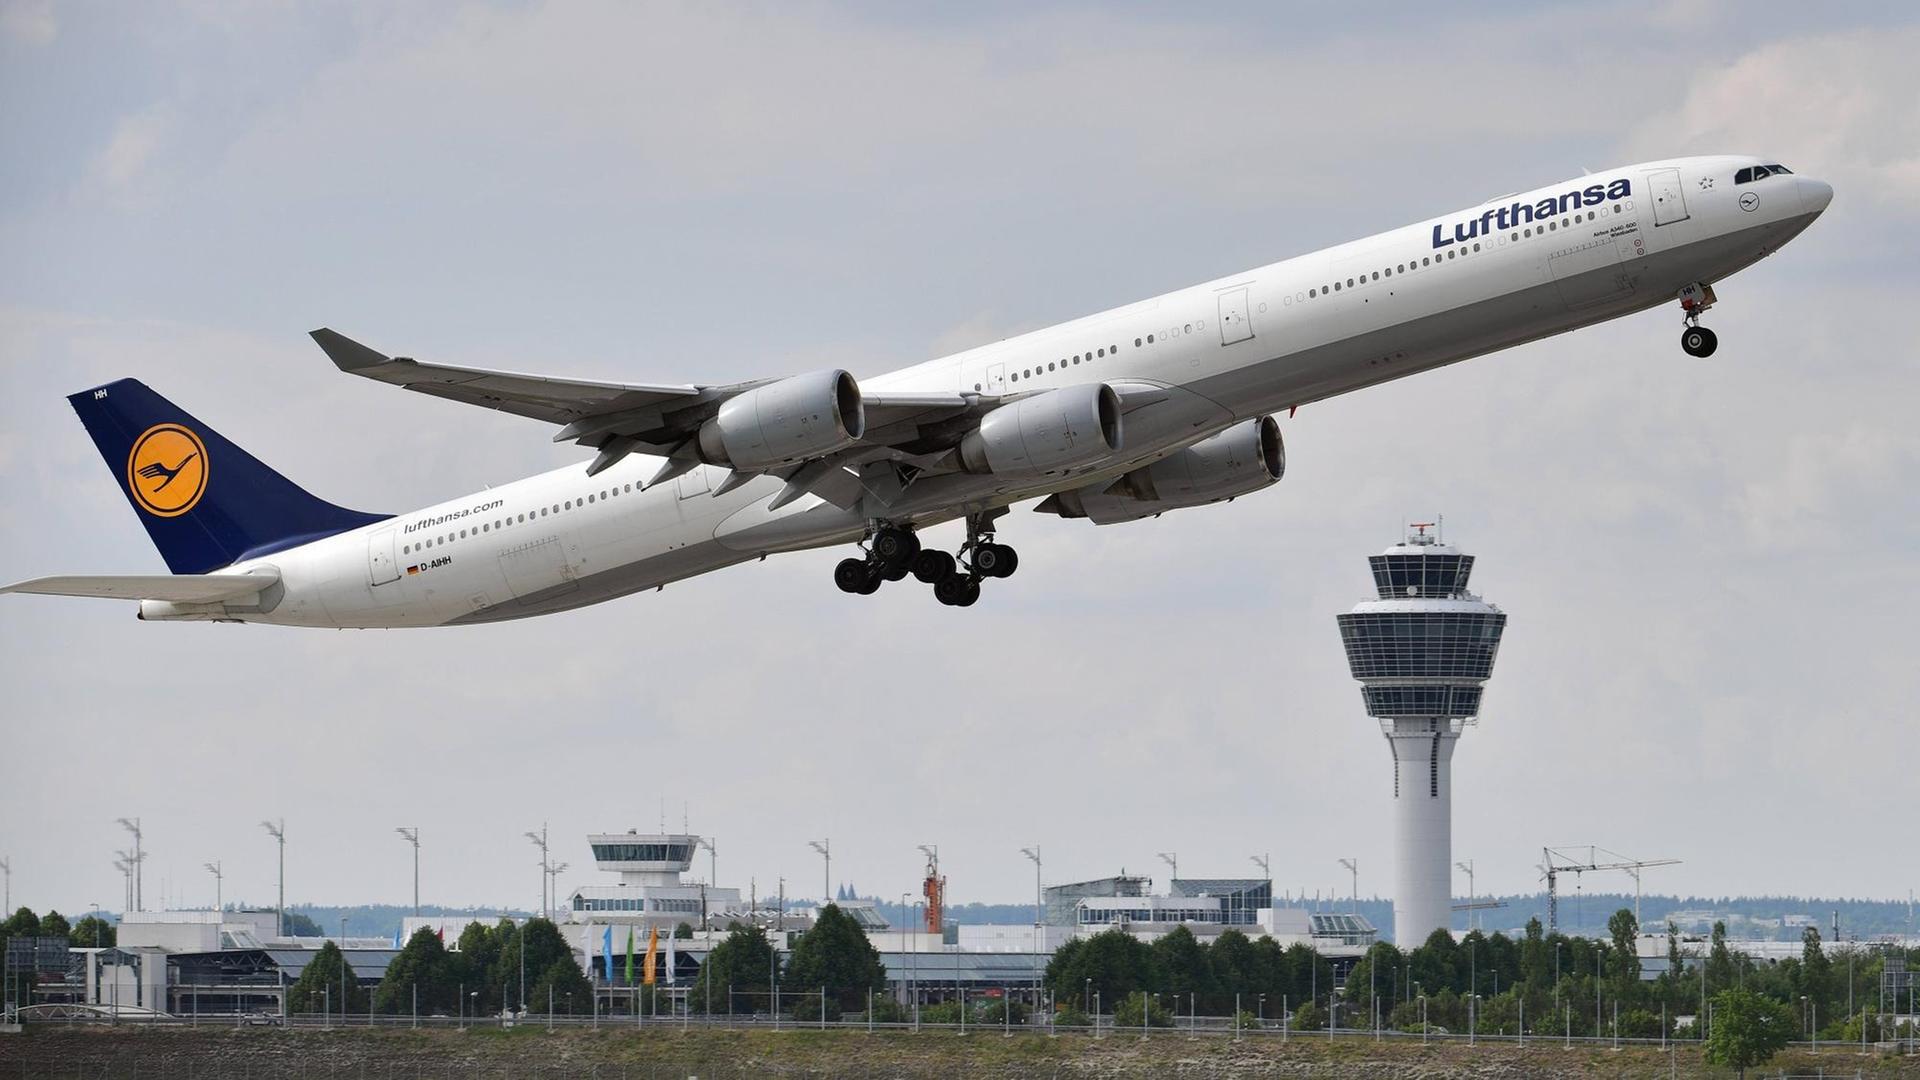 Der Airbus A340-642 Lufthansa Wiesbaden startet vom Flughafen Franz Josef Strauß in München